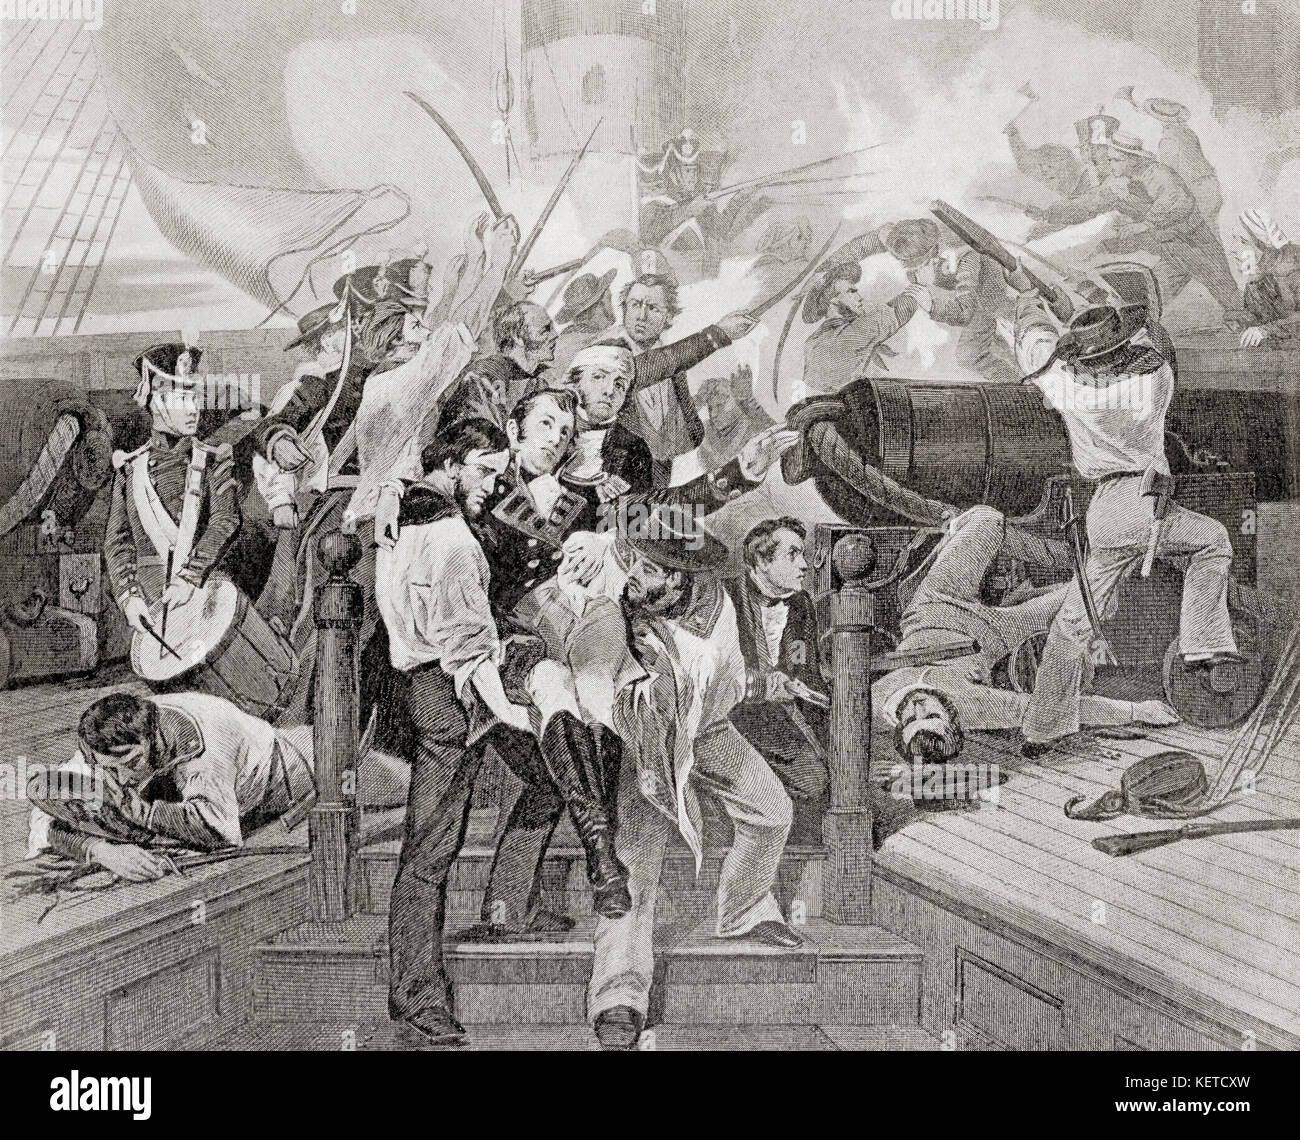 Der Tod von James Lawrence an Bord der USS Chesapeake nach einer Einschiffaktion gegen HMS Shannon während des Krieges von 1812. James Lawrence, 1781 – 1813. Amerikanischer Marineoffizier. Aus Hutchinson's History of the Nations, veröffentlicht 1915. Stockfoto